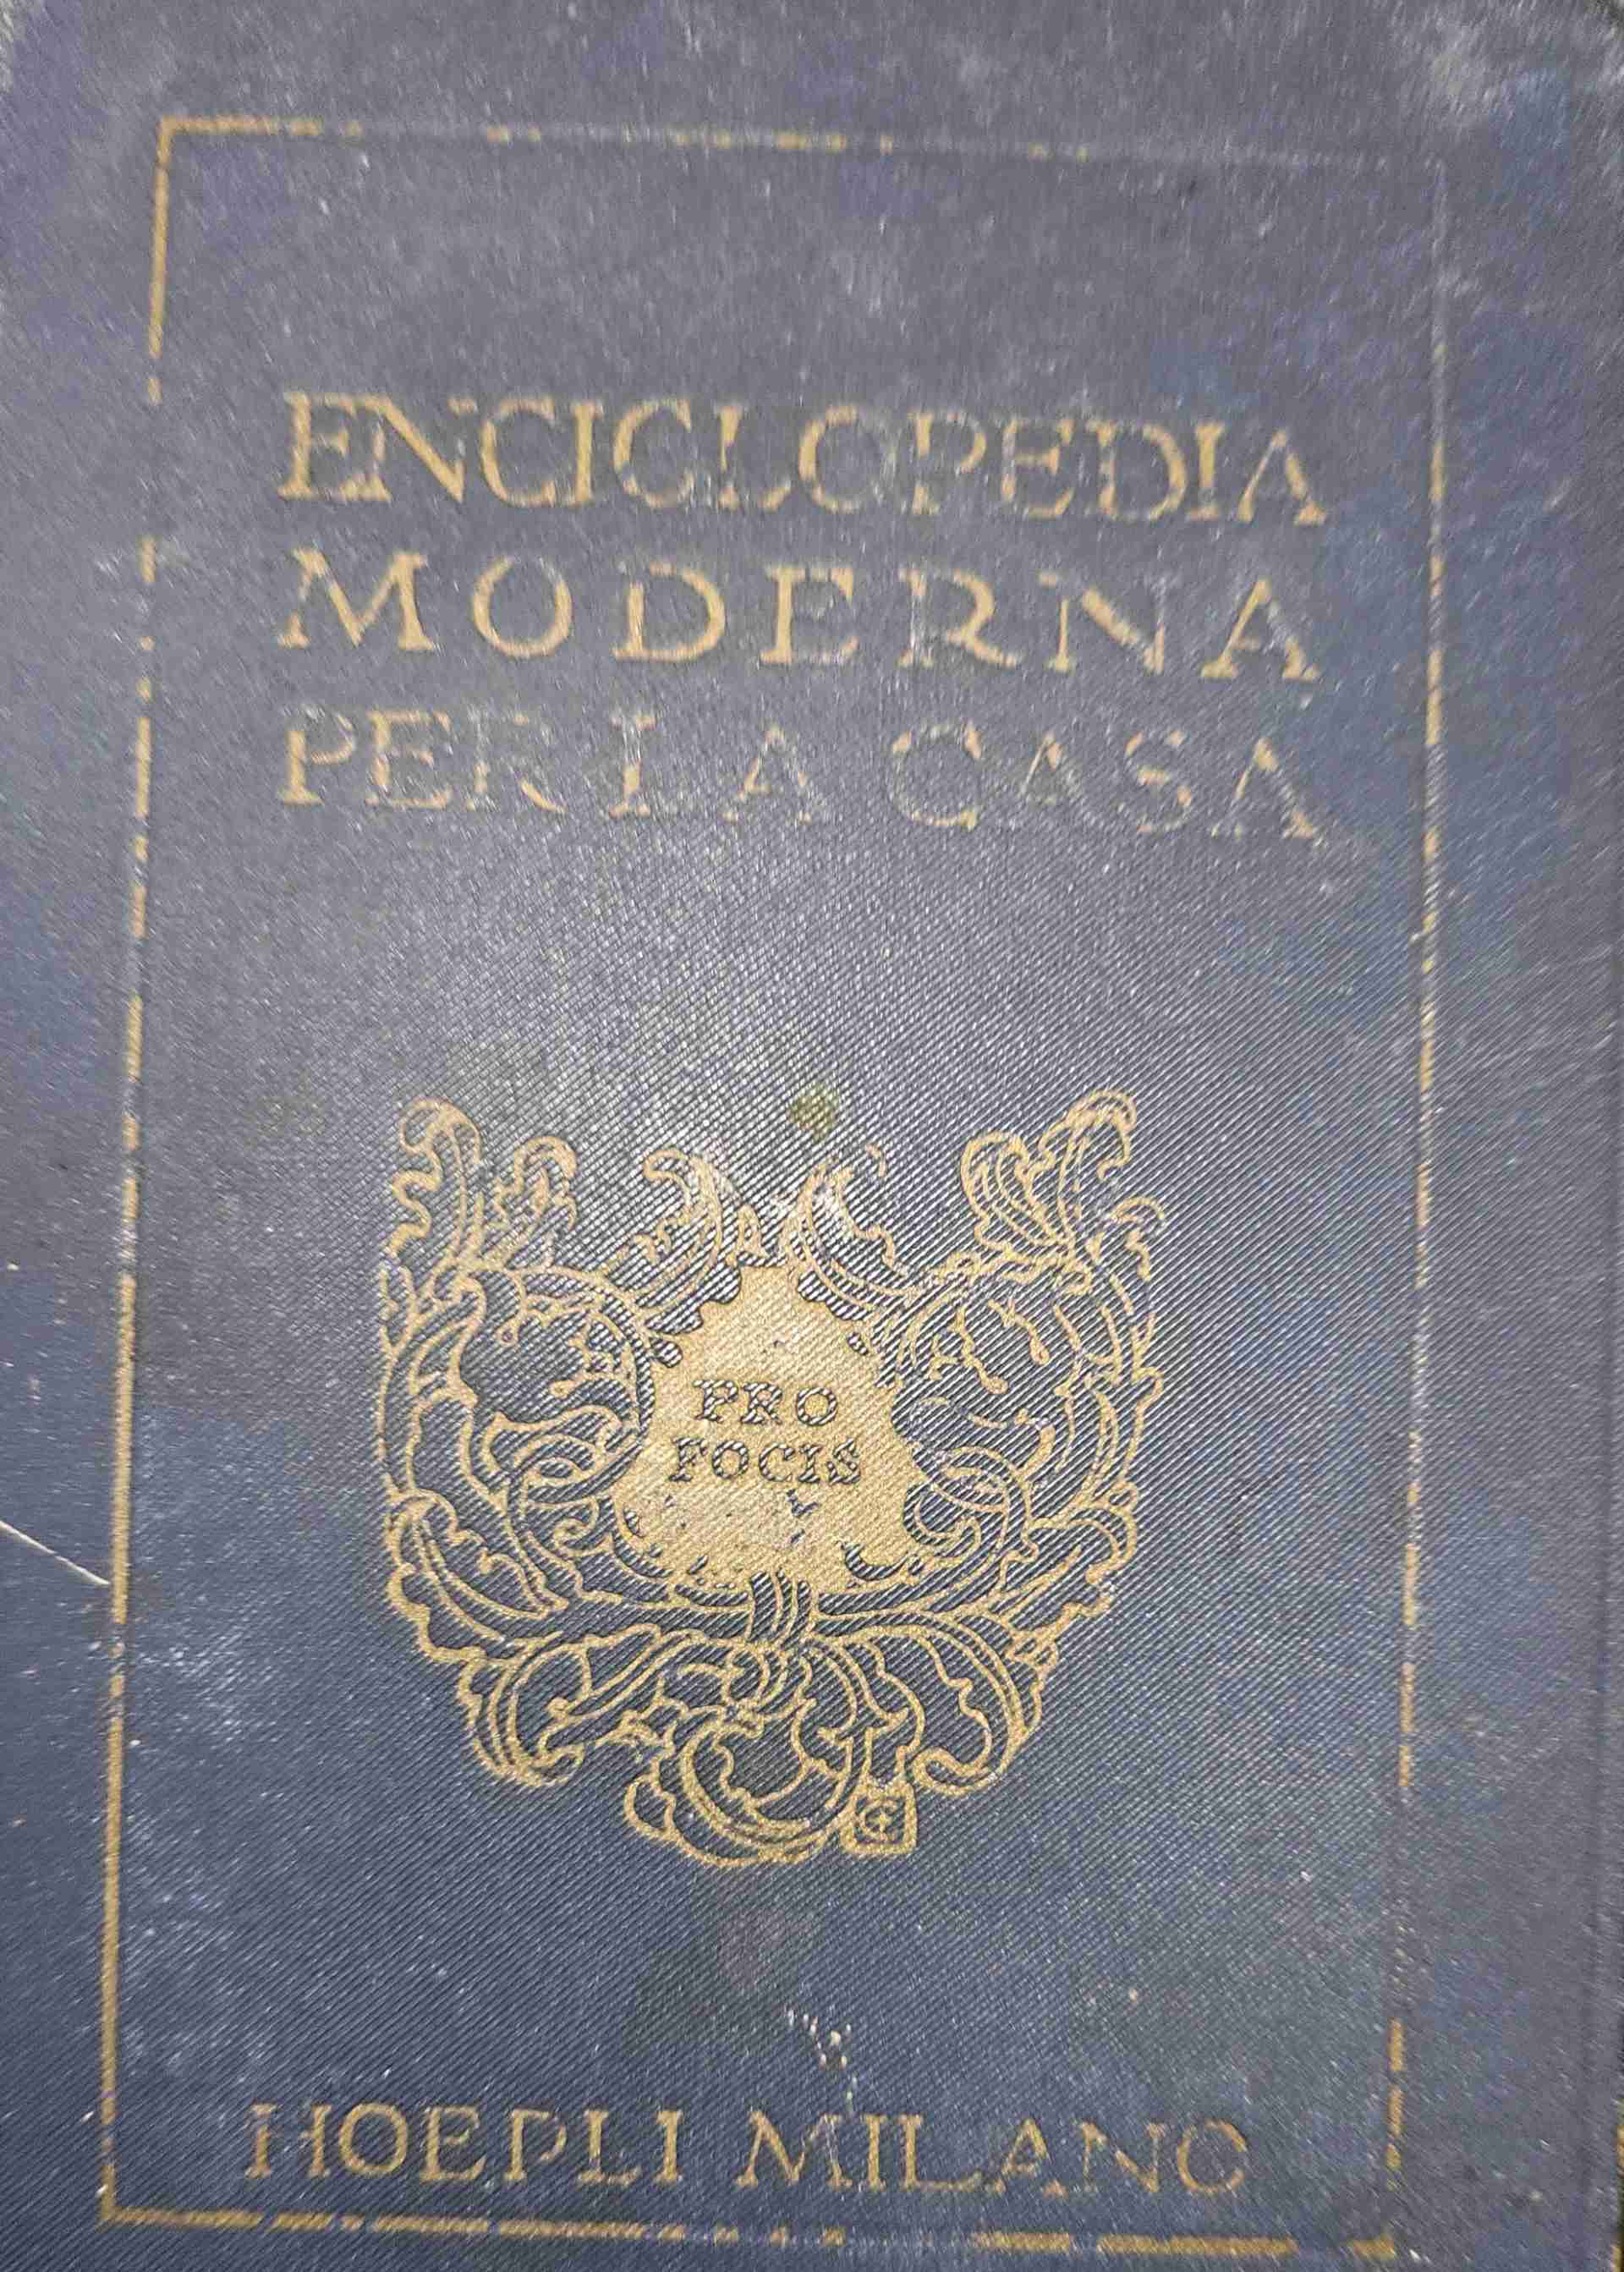 Enciclopedia moderna per la casa -ottava edizione